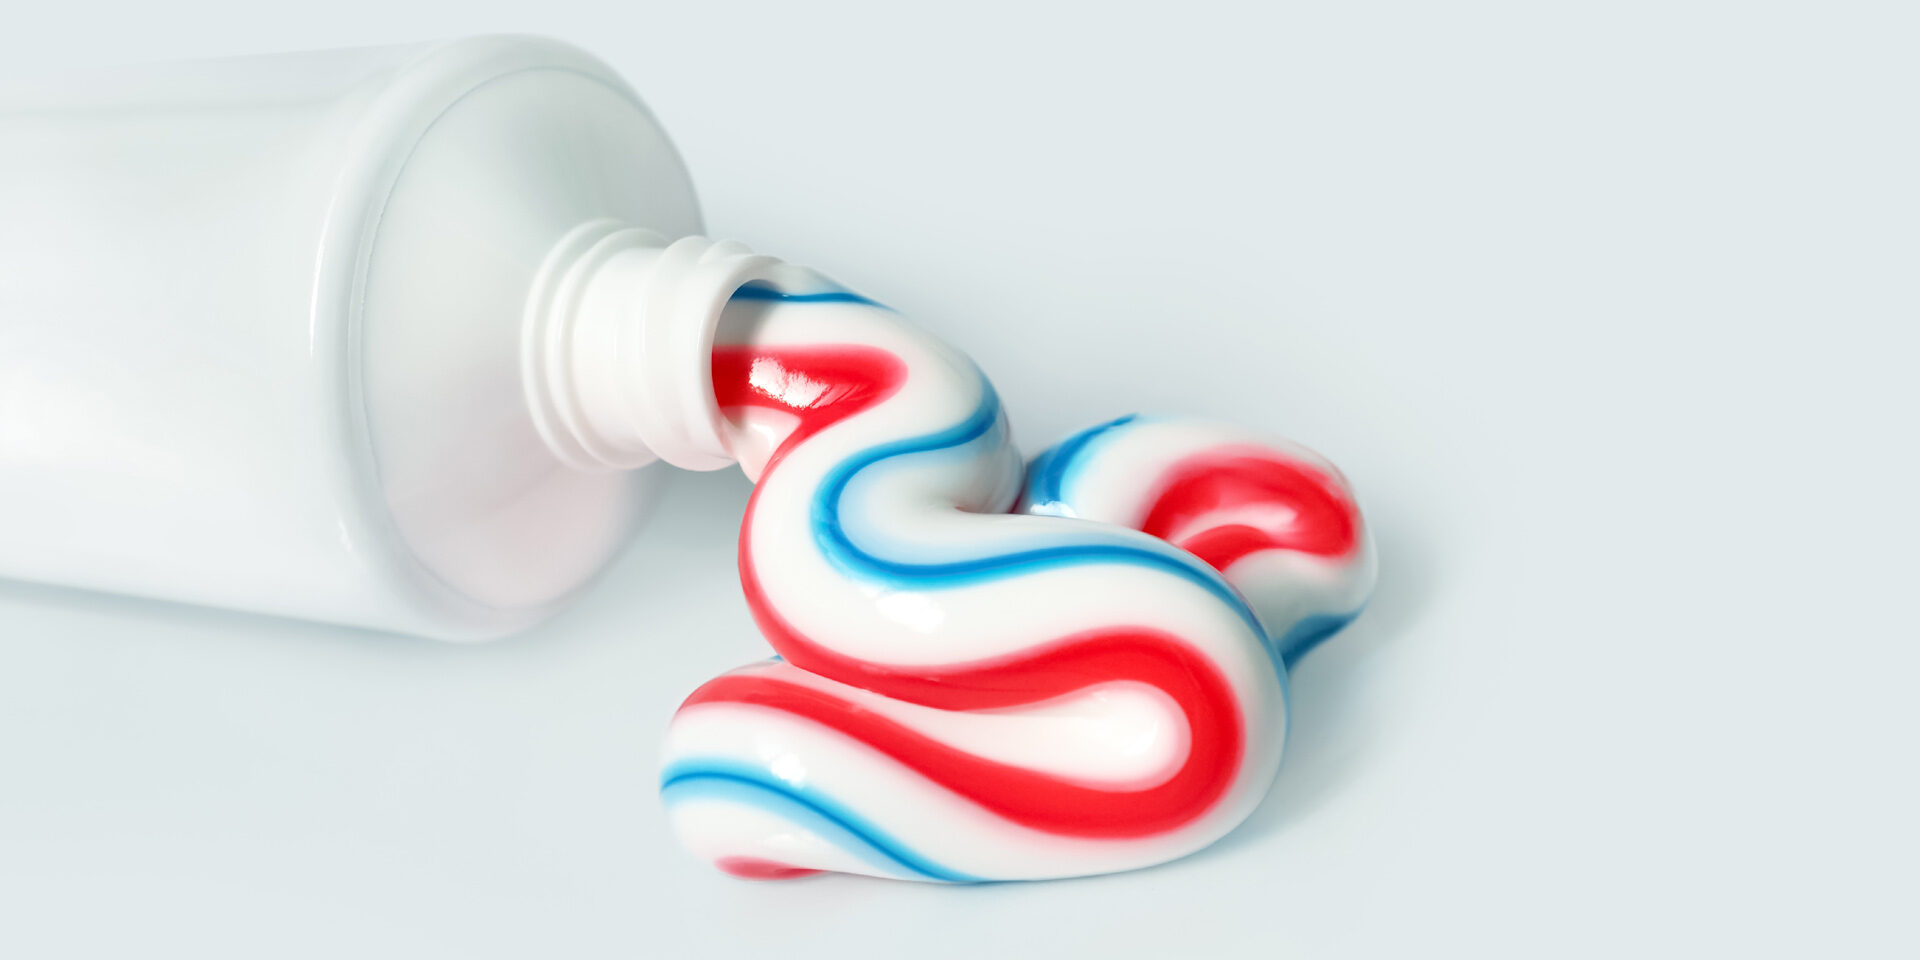 Δώστε προσοχή: Ποια συστατικά πρέπει να αποφεύγετε όταν αγοράζετε οδοντόκρεμα